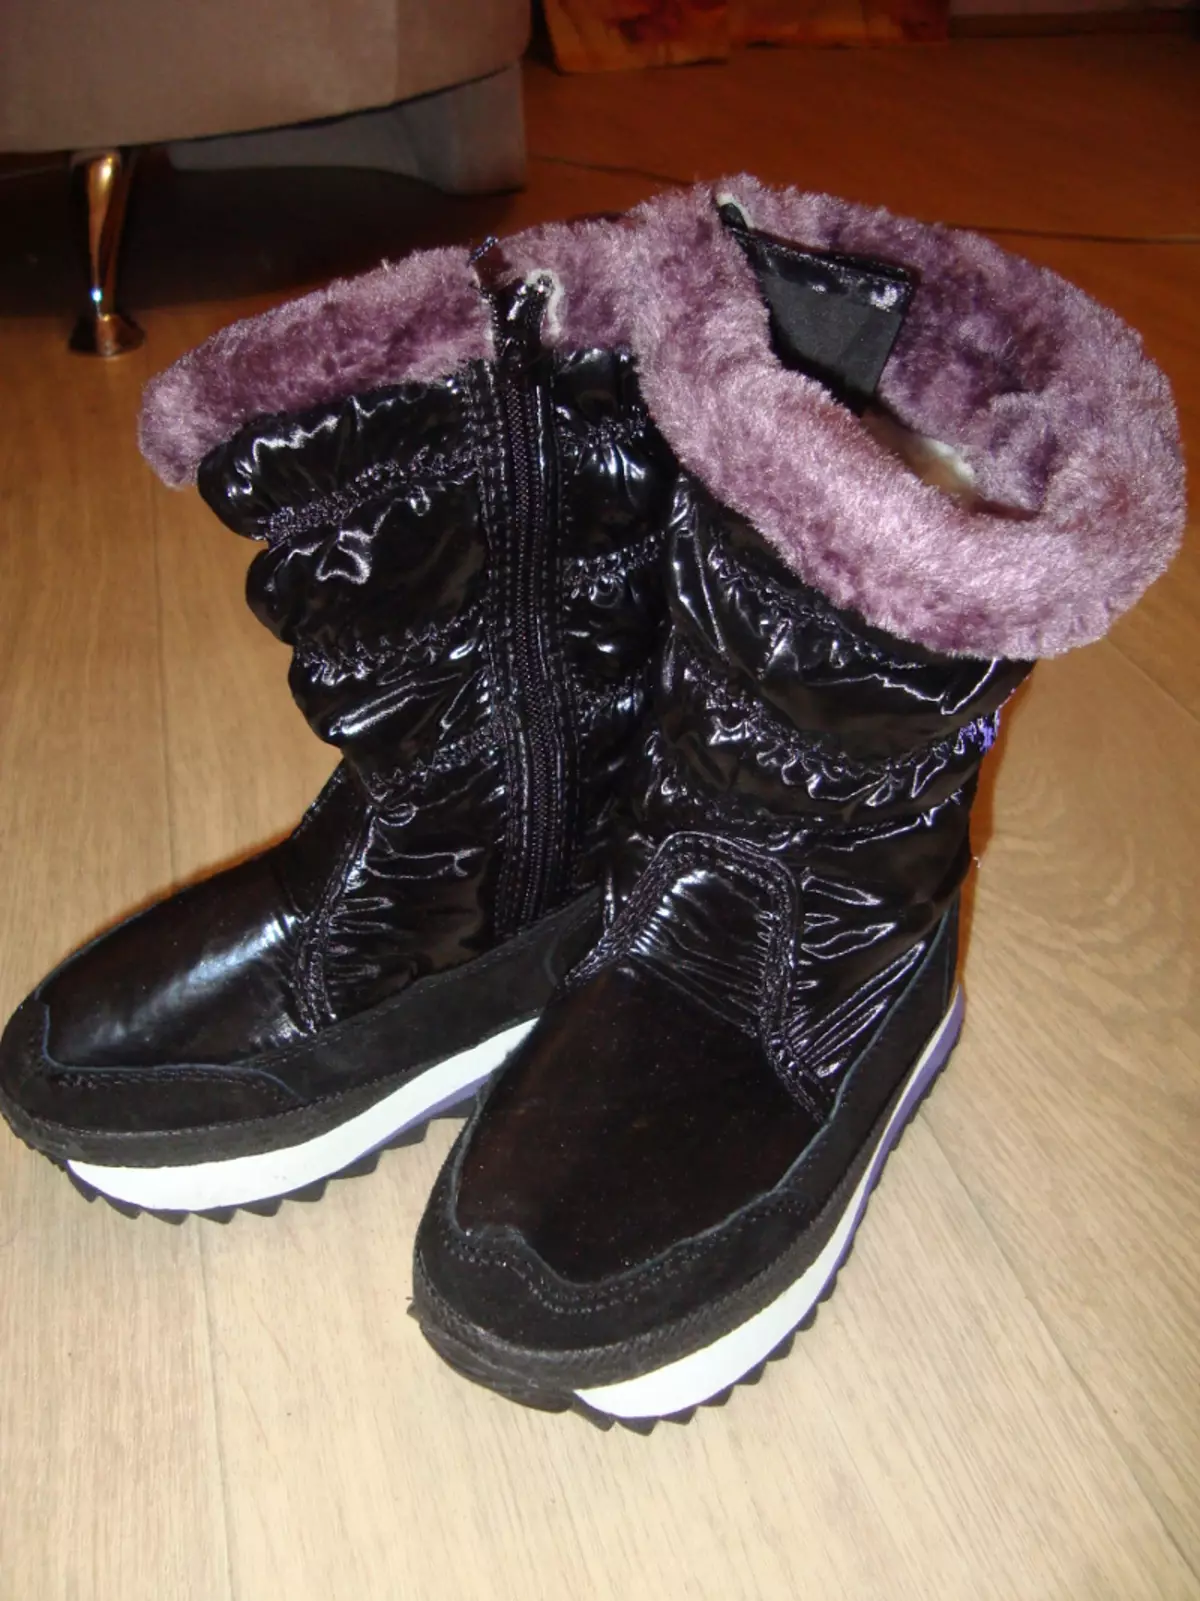 Dutchik King Boots (58 foto's): Vroue se wintermodelle van koningknoppe, resensies oor die Duitse stewels 2104_52